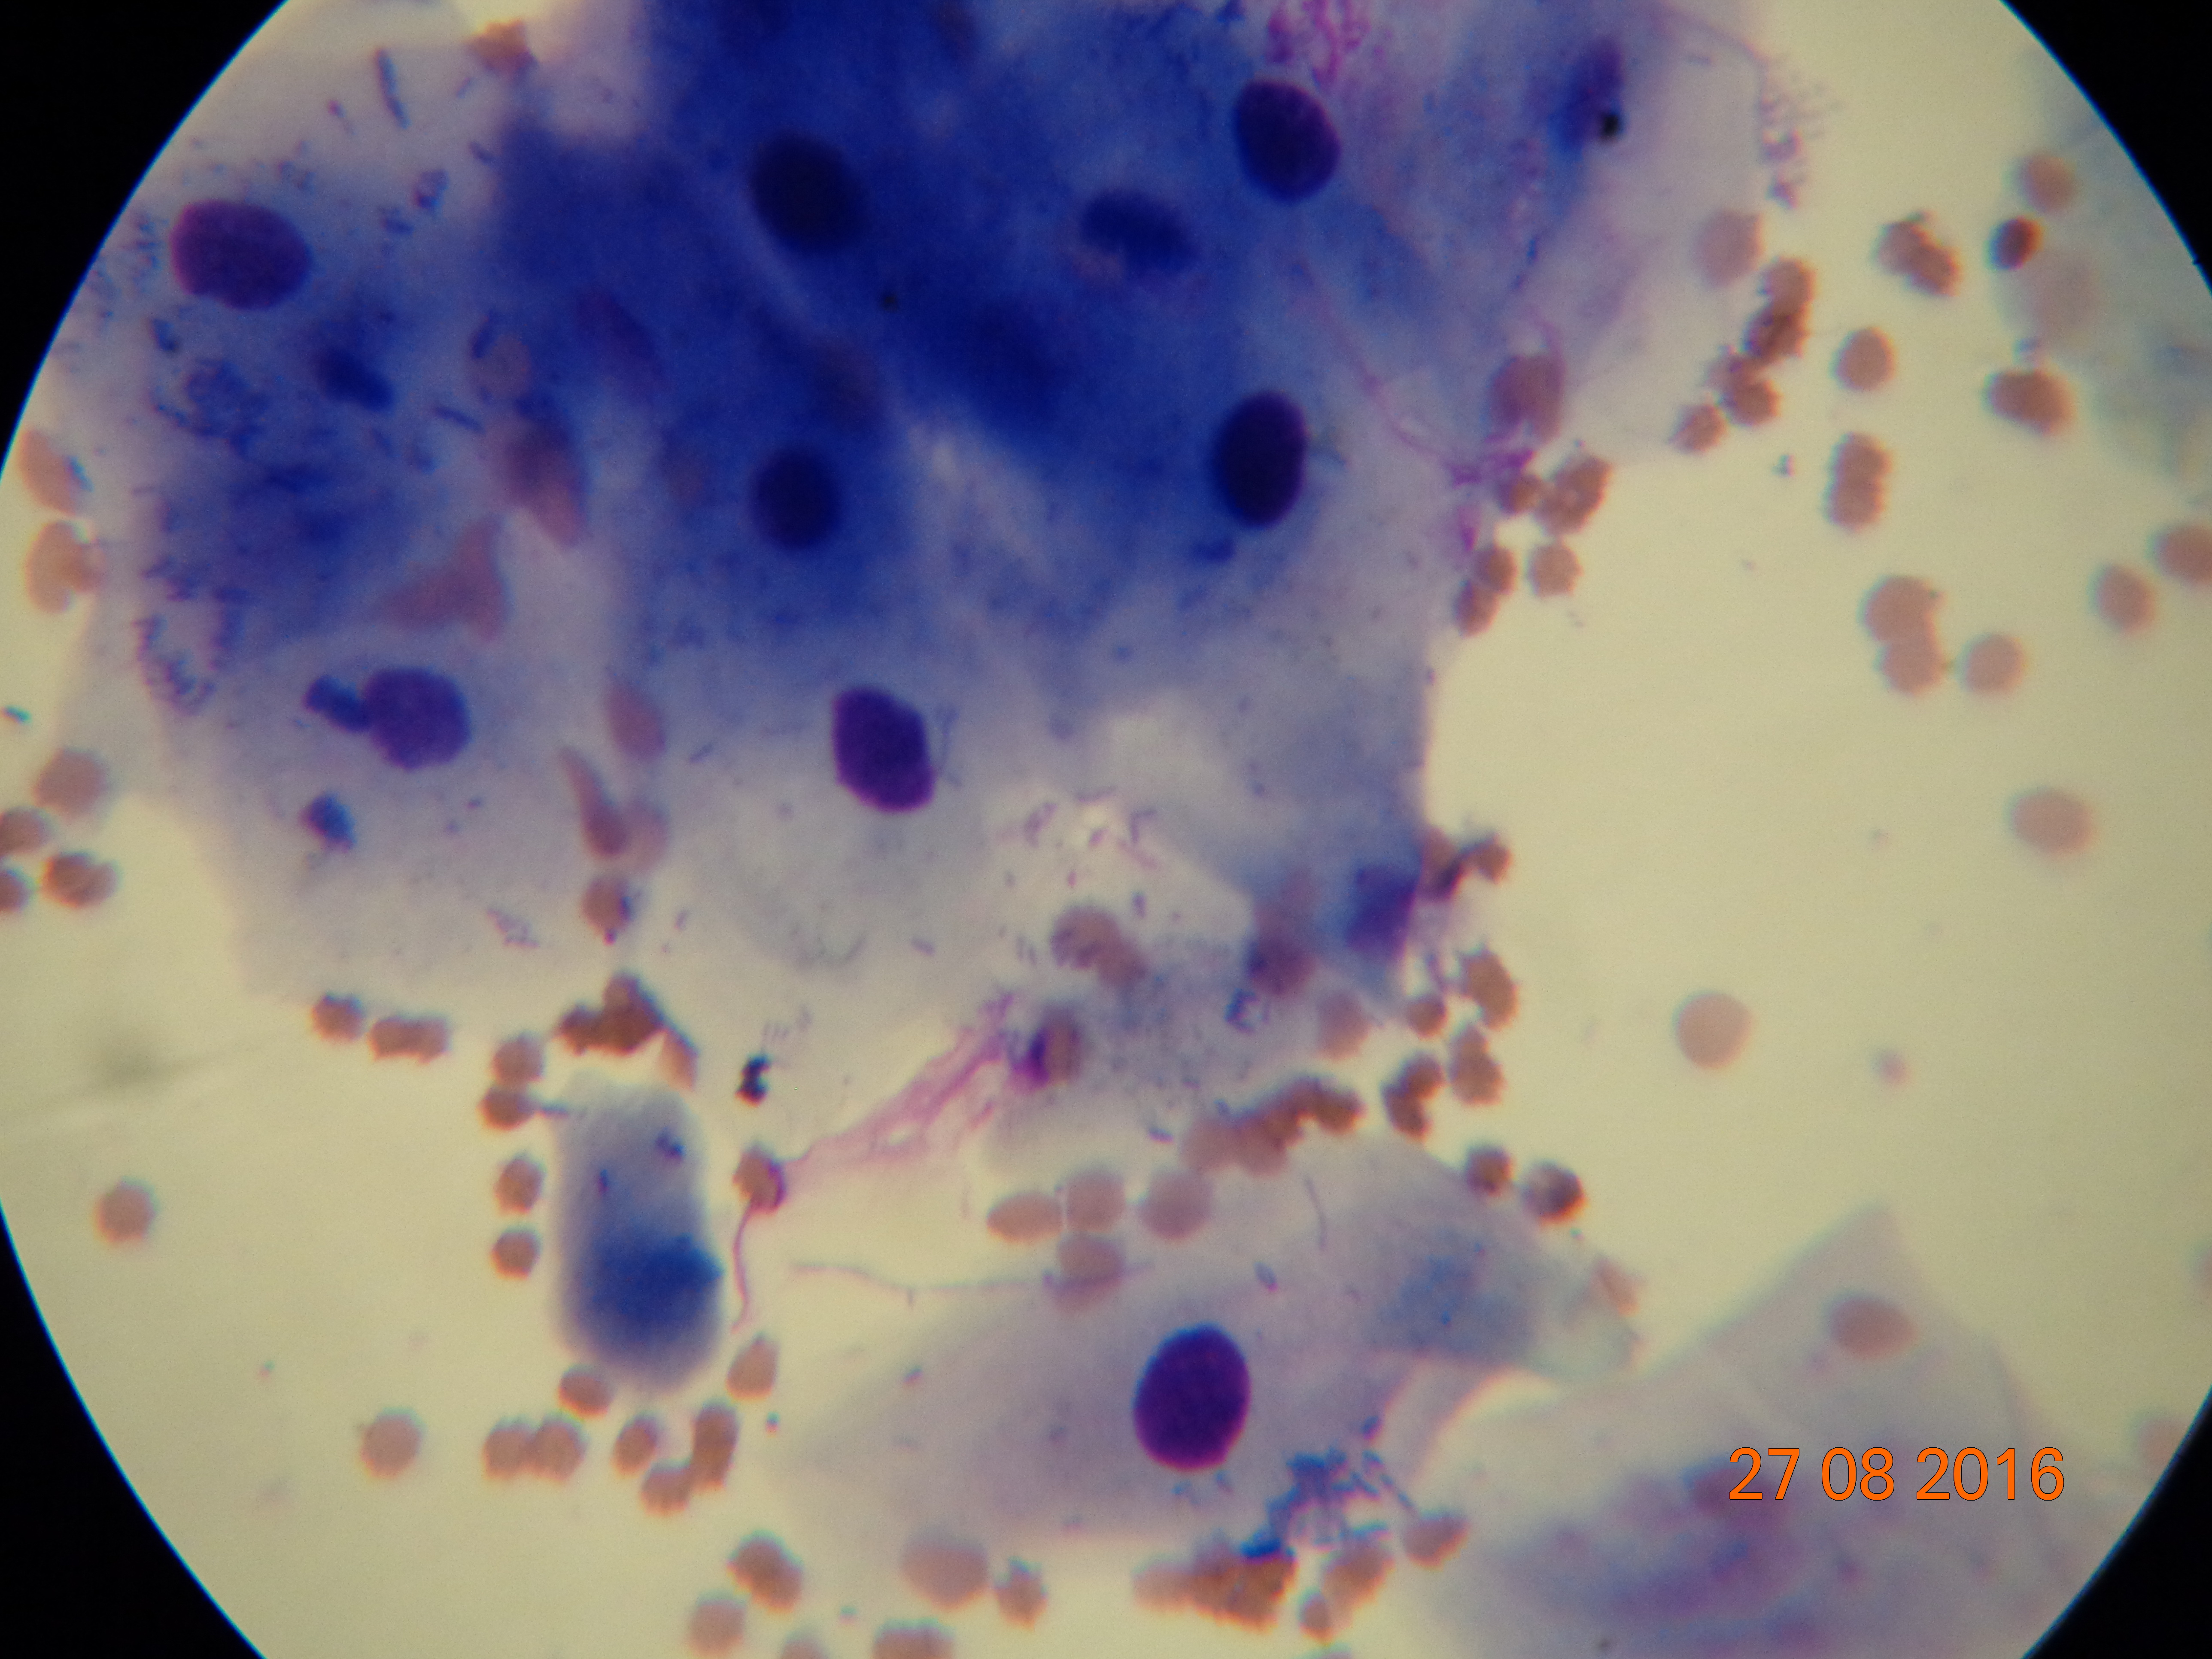 Паракератозные кератиноциты в соскобе, окрашенном по Паппенгейму. Большое количество бактерий связано с вторичной инфекцией